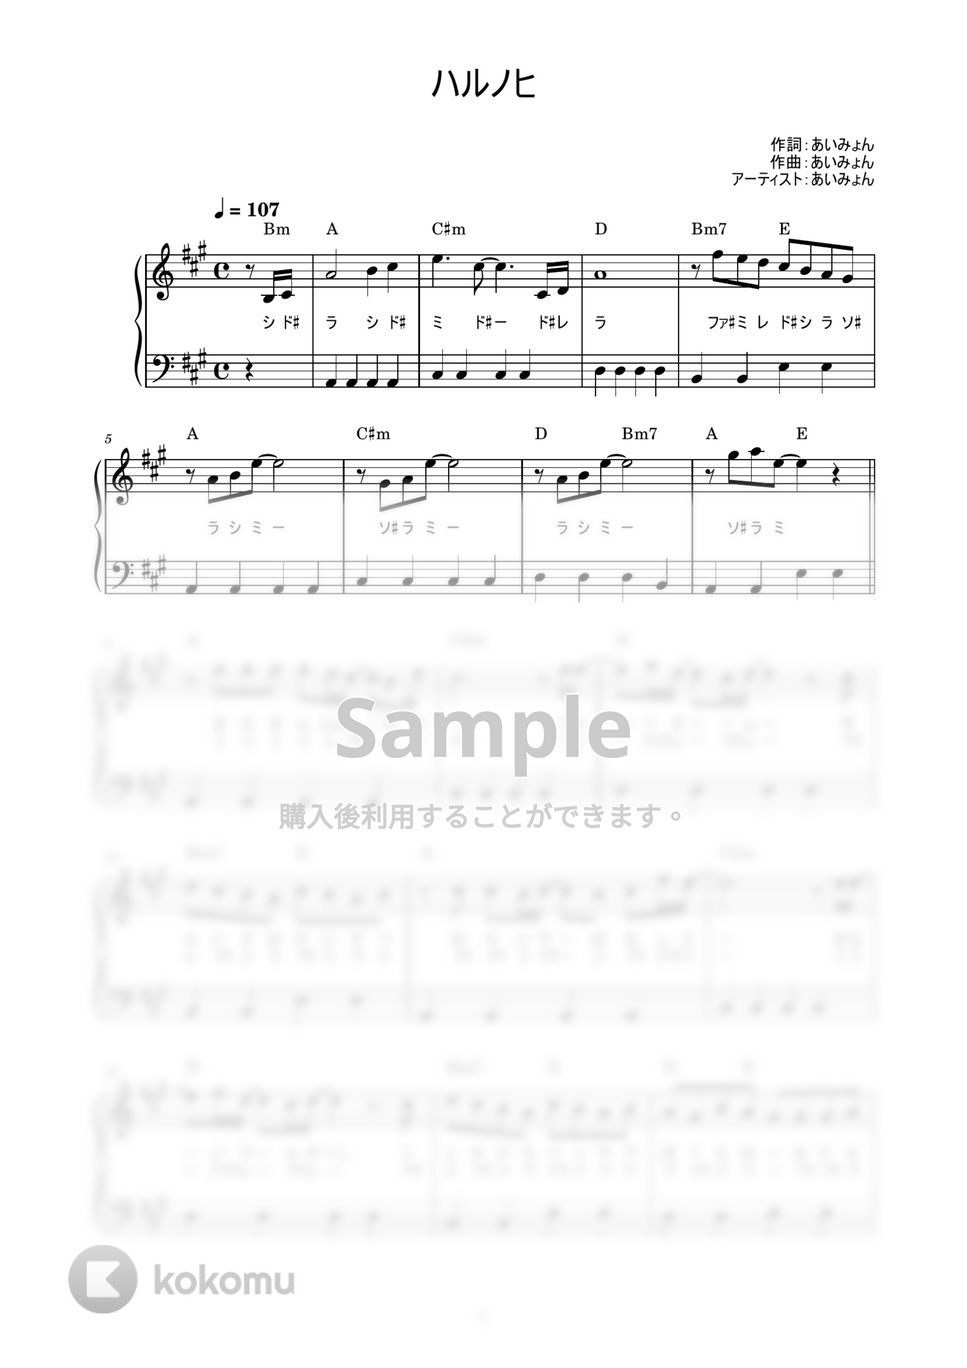 あいみょん - ハルノヒ (かんたん / 歌詞付き / ドレミ付き / 初心者) by piano.tokyo